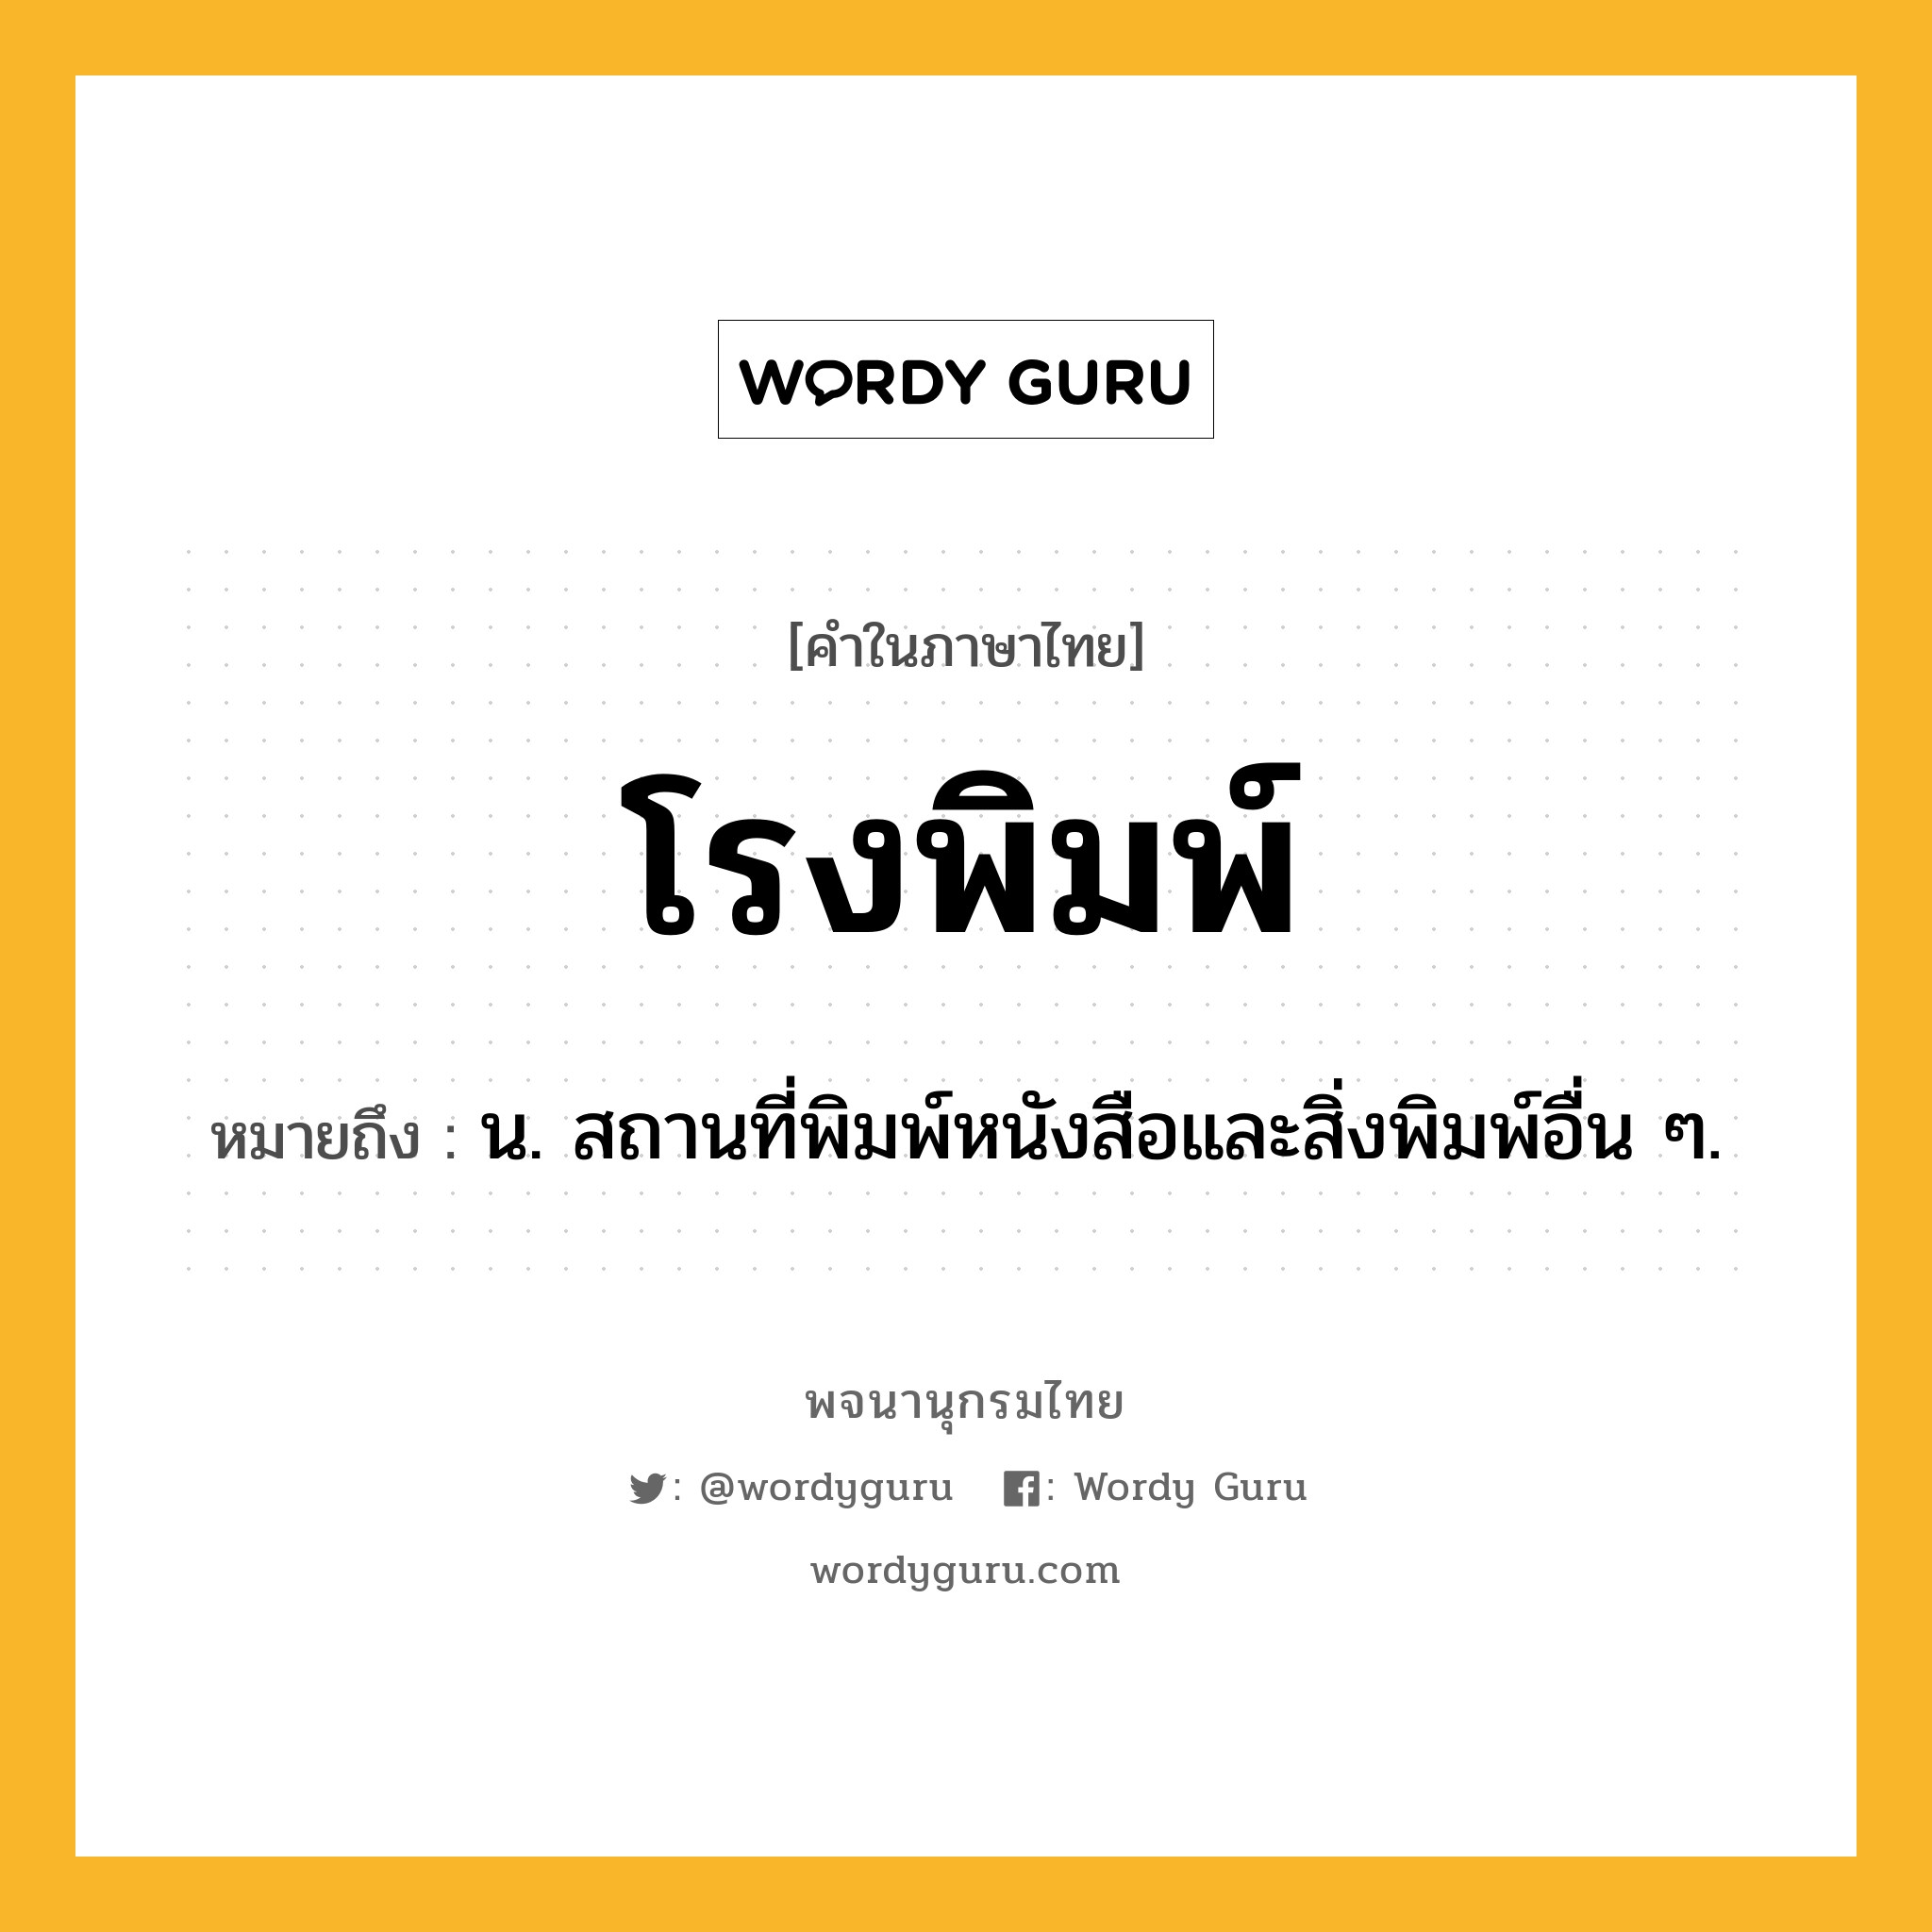 โรงพิมพ์ ความหมาย หมายถึงอะไร?, คำในภาษาไทย โรงพิมพ์ หมายถึง น. สถานที่พิมพ์หนังสือและสิ่งพิมพ์อื่น ๆ.